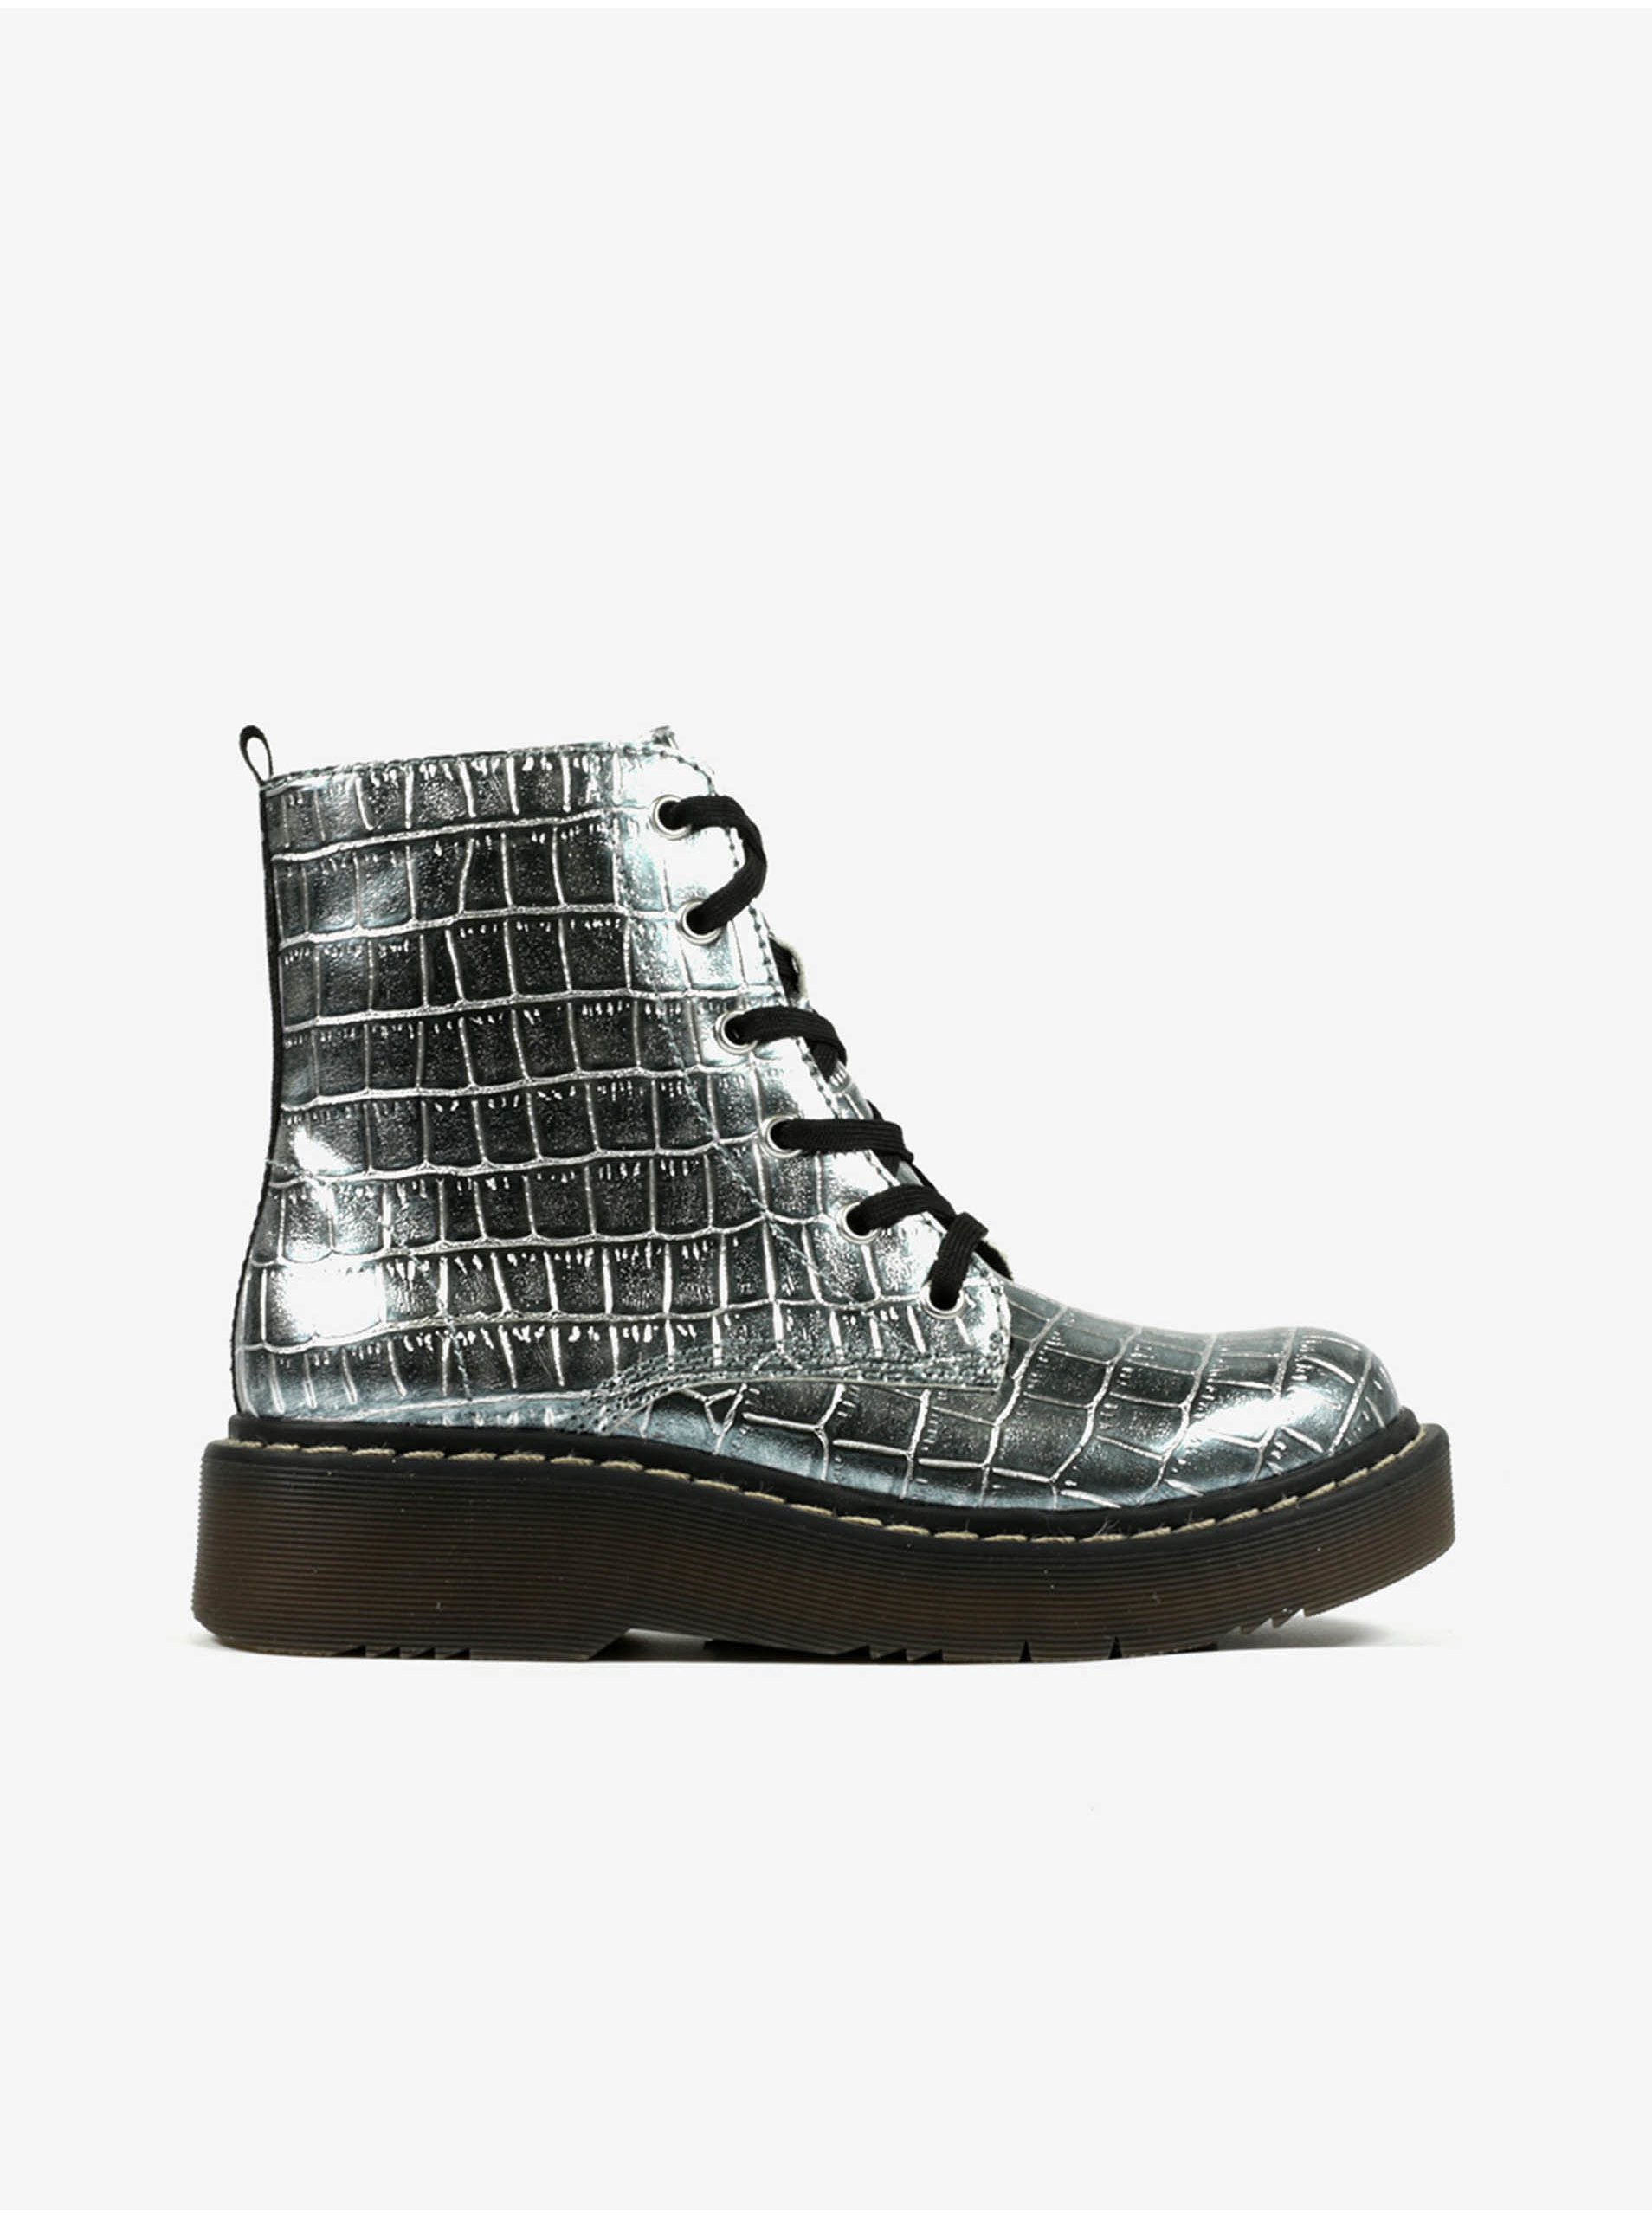 E-shop Holčičí kotníkové boty ve stříbrné barvě se zvířecím vzorem Richter